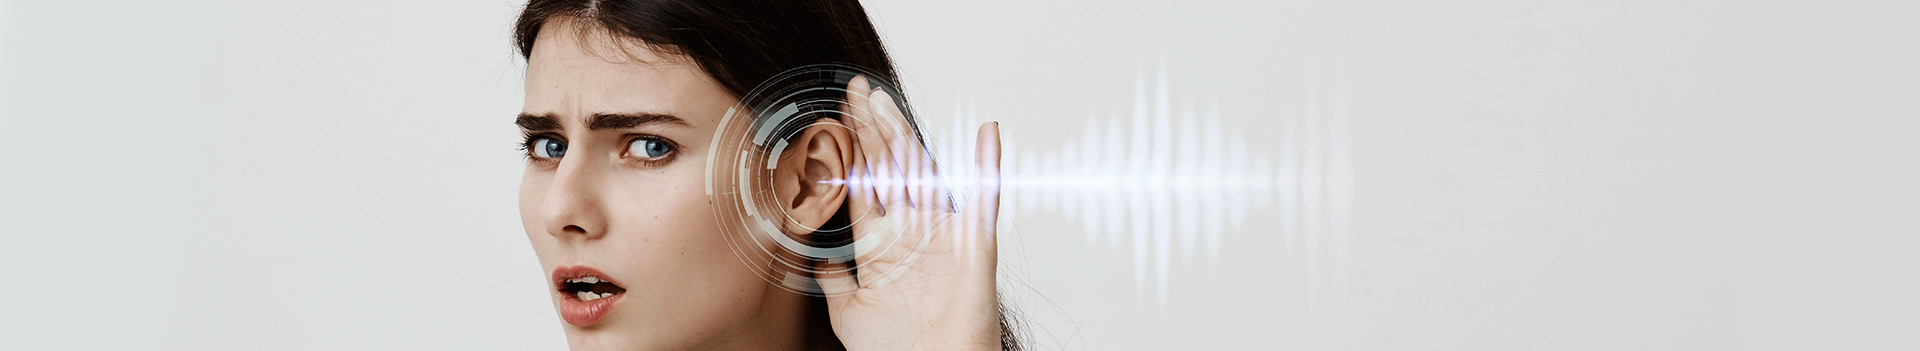 Voz sintética: o que é e como prevenir fraudes com a voz